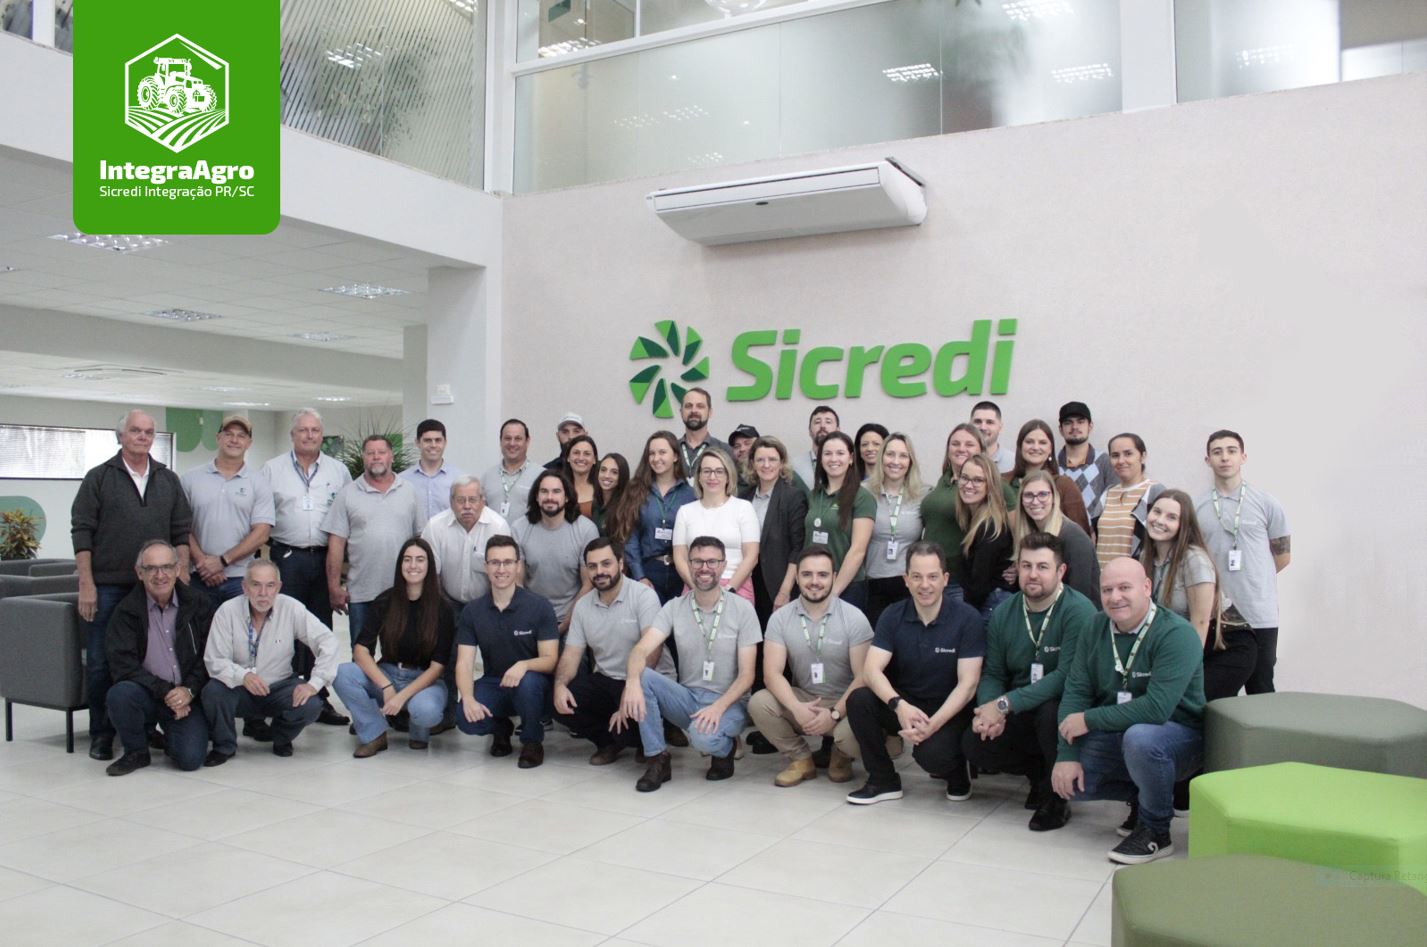 CRÉDITO: Sicredi Integração PR/SC realiza a terceira edição do evento Integra Agro 